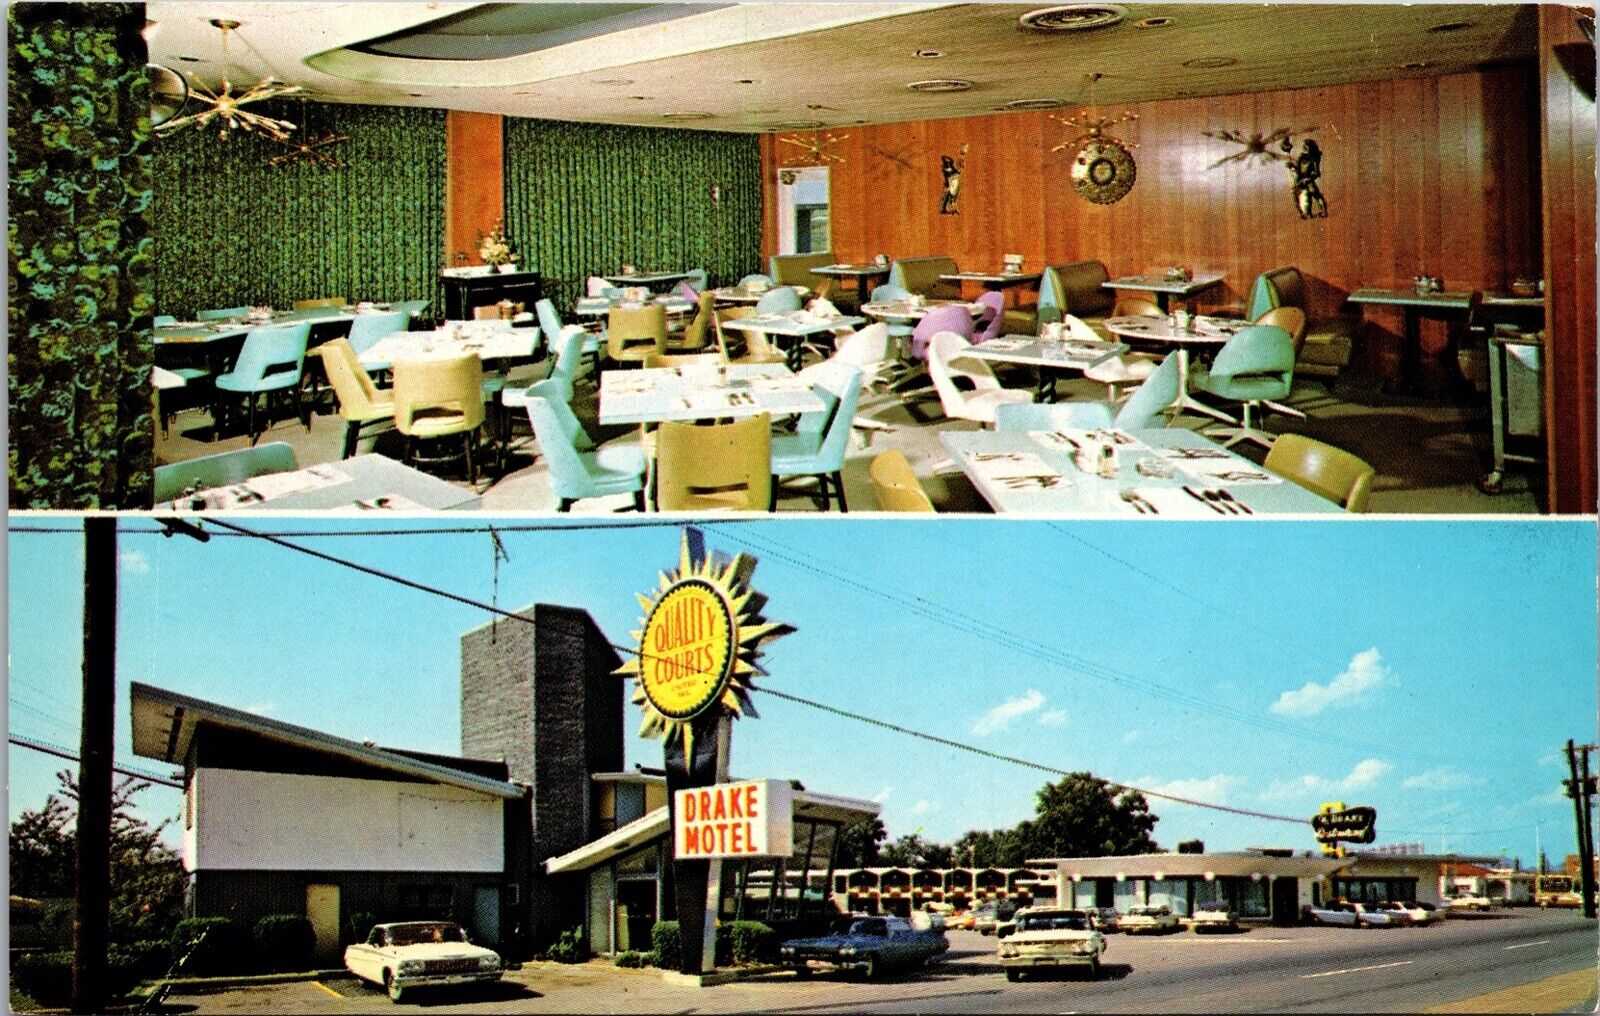 Drake Motel & Restaurant Chattanooga Tenn. Postcard Chrome Multi View 1950's Era